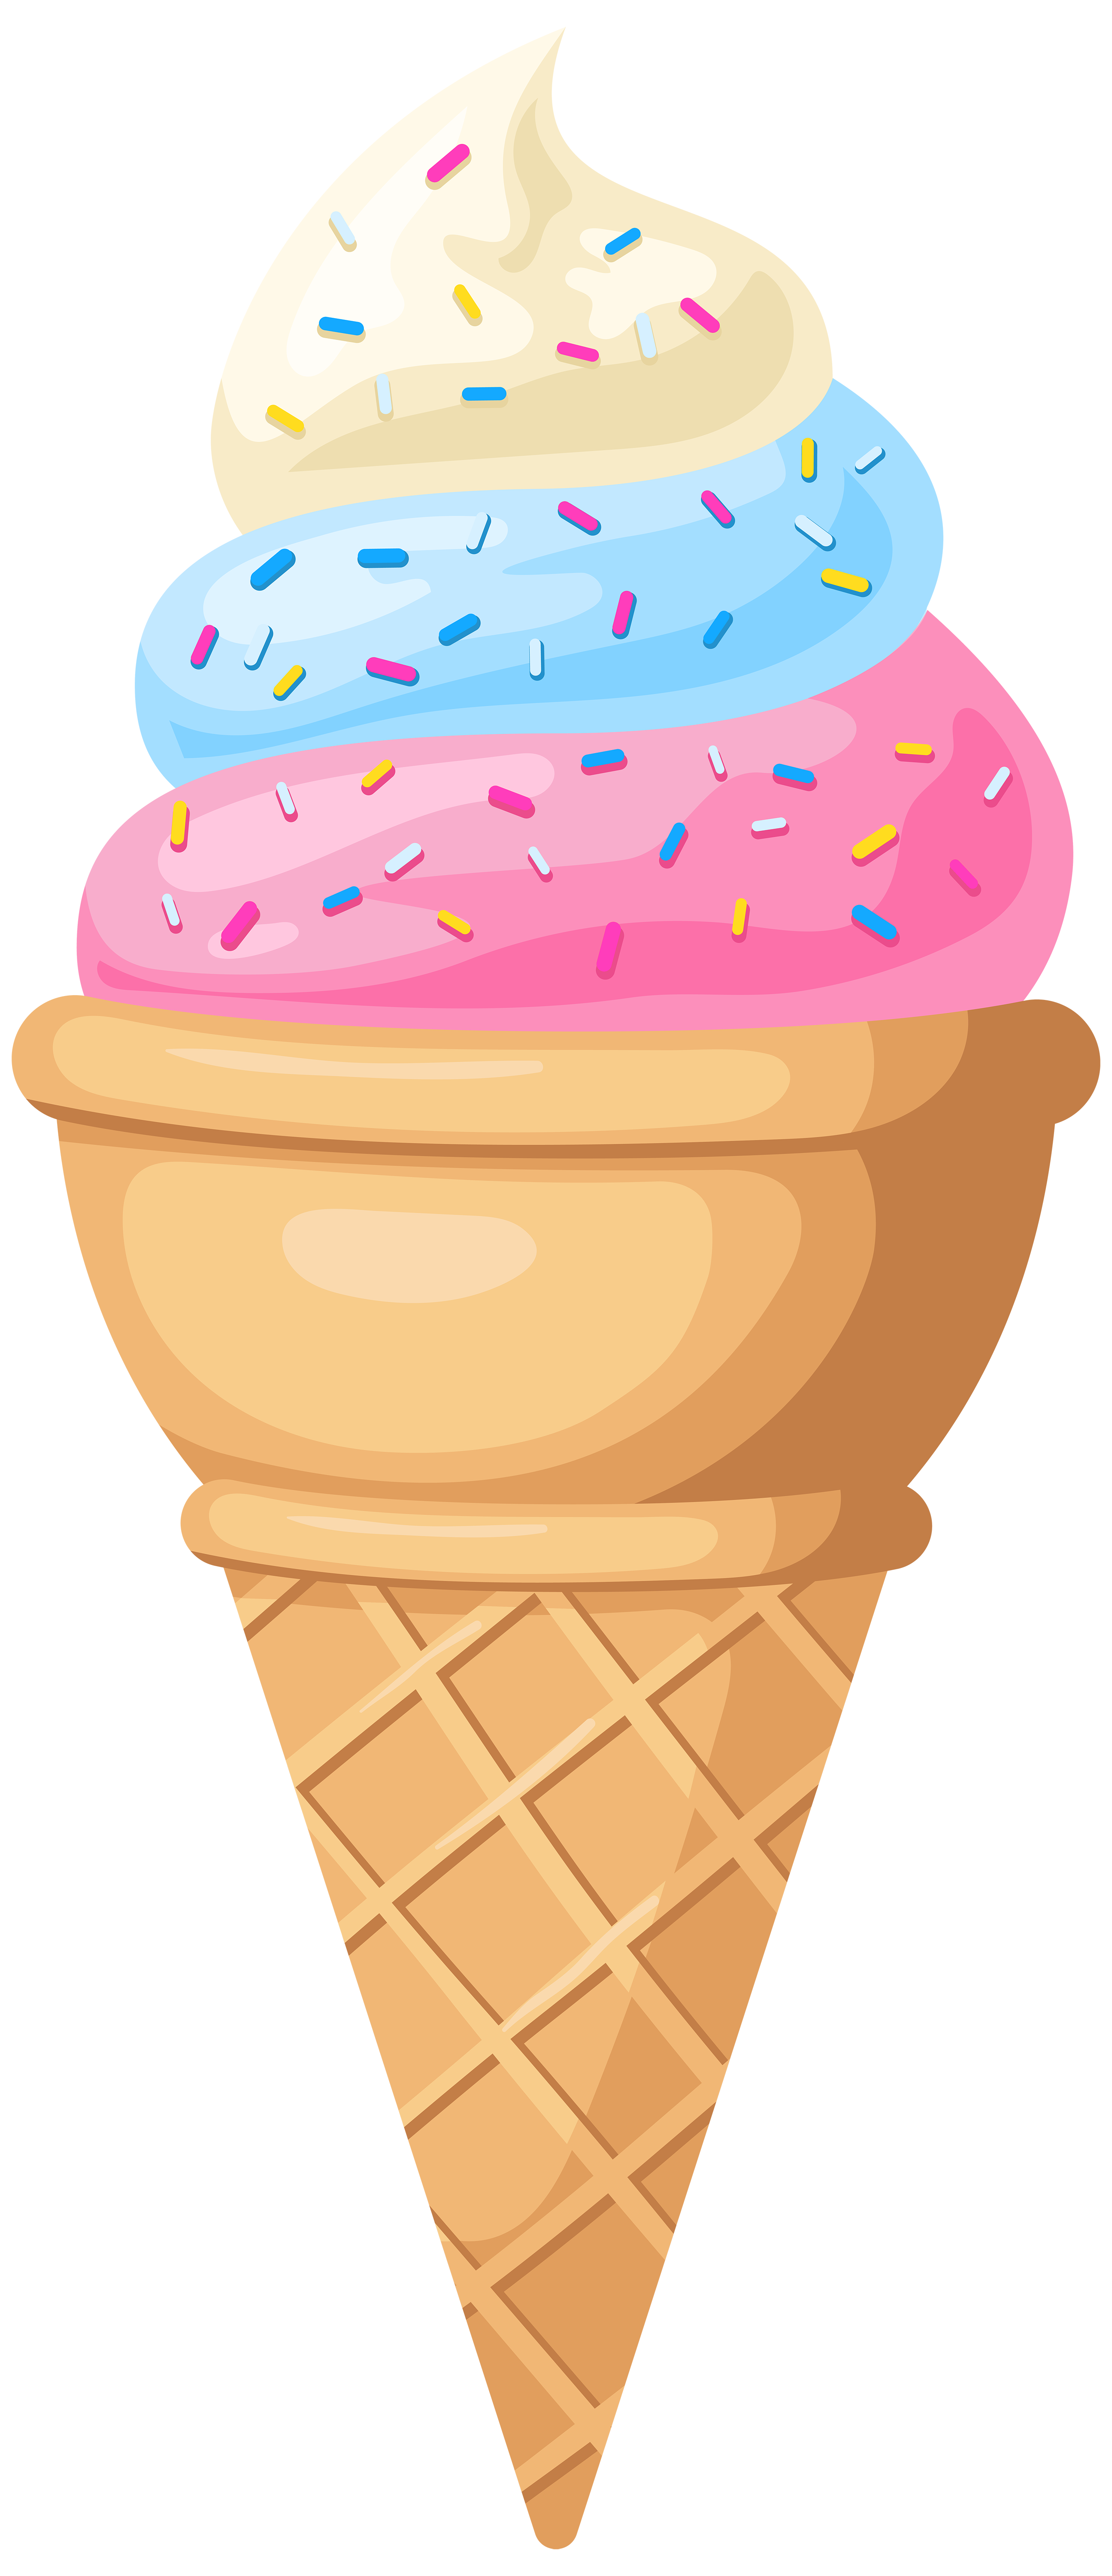 دانلود عکس بستنی قیفی چند اسکوپی با اسمارتیز و شکلات 